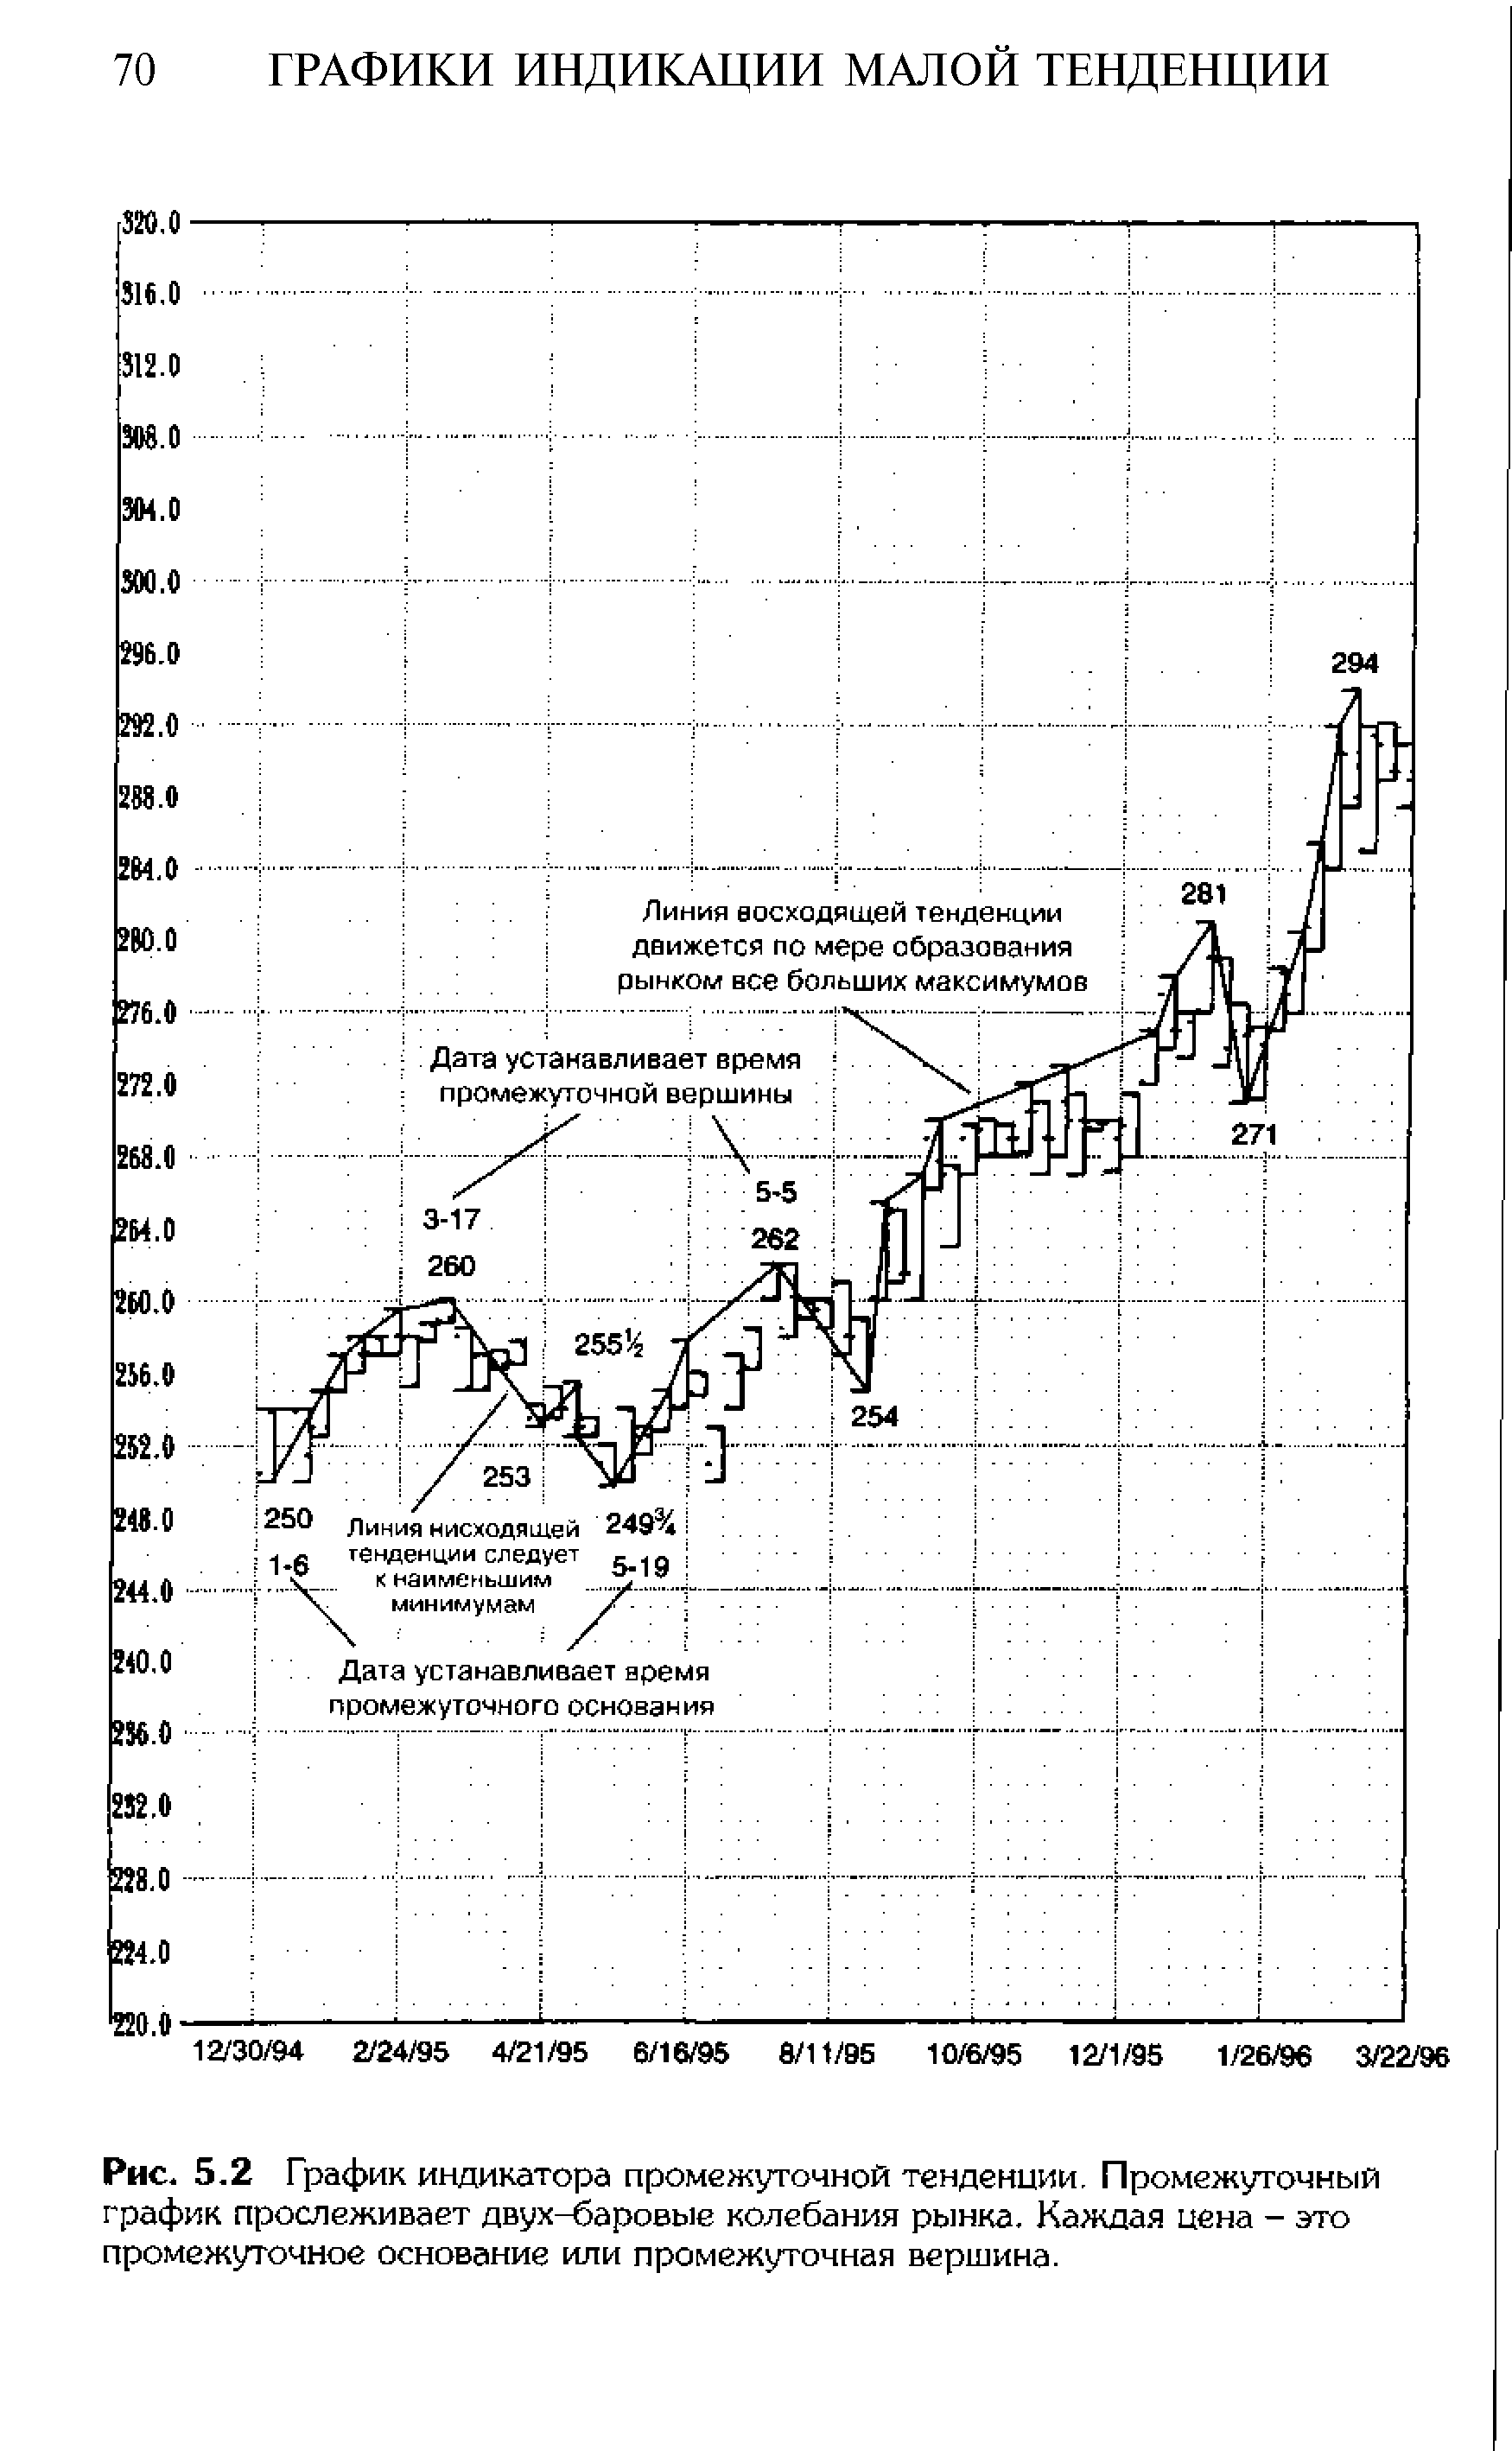 Рис. 5.2 График индикатора промежуточной тенденции. Промежуточный график прослеживает двух-баровые колебания рынка. Каждая цена - это промежуточное основание или промежуточная вершина.
